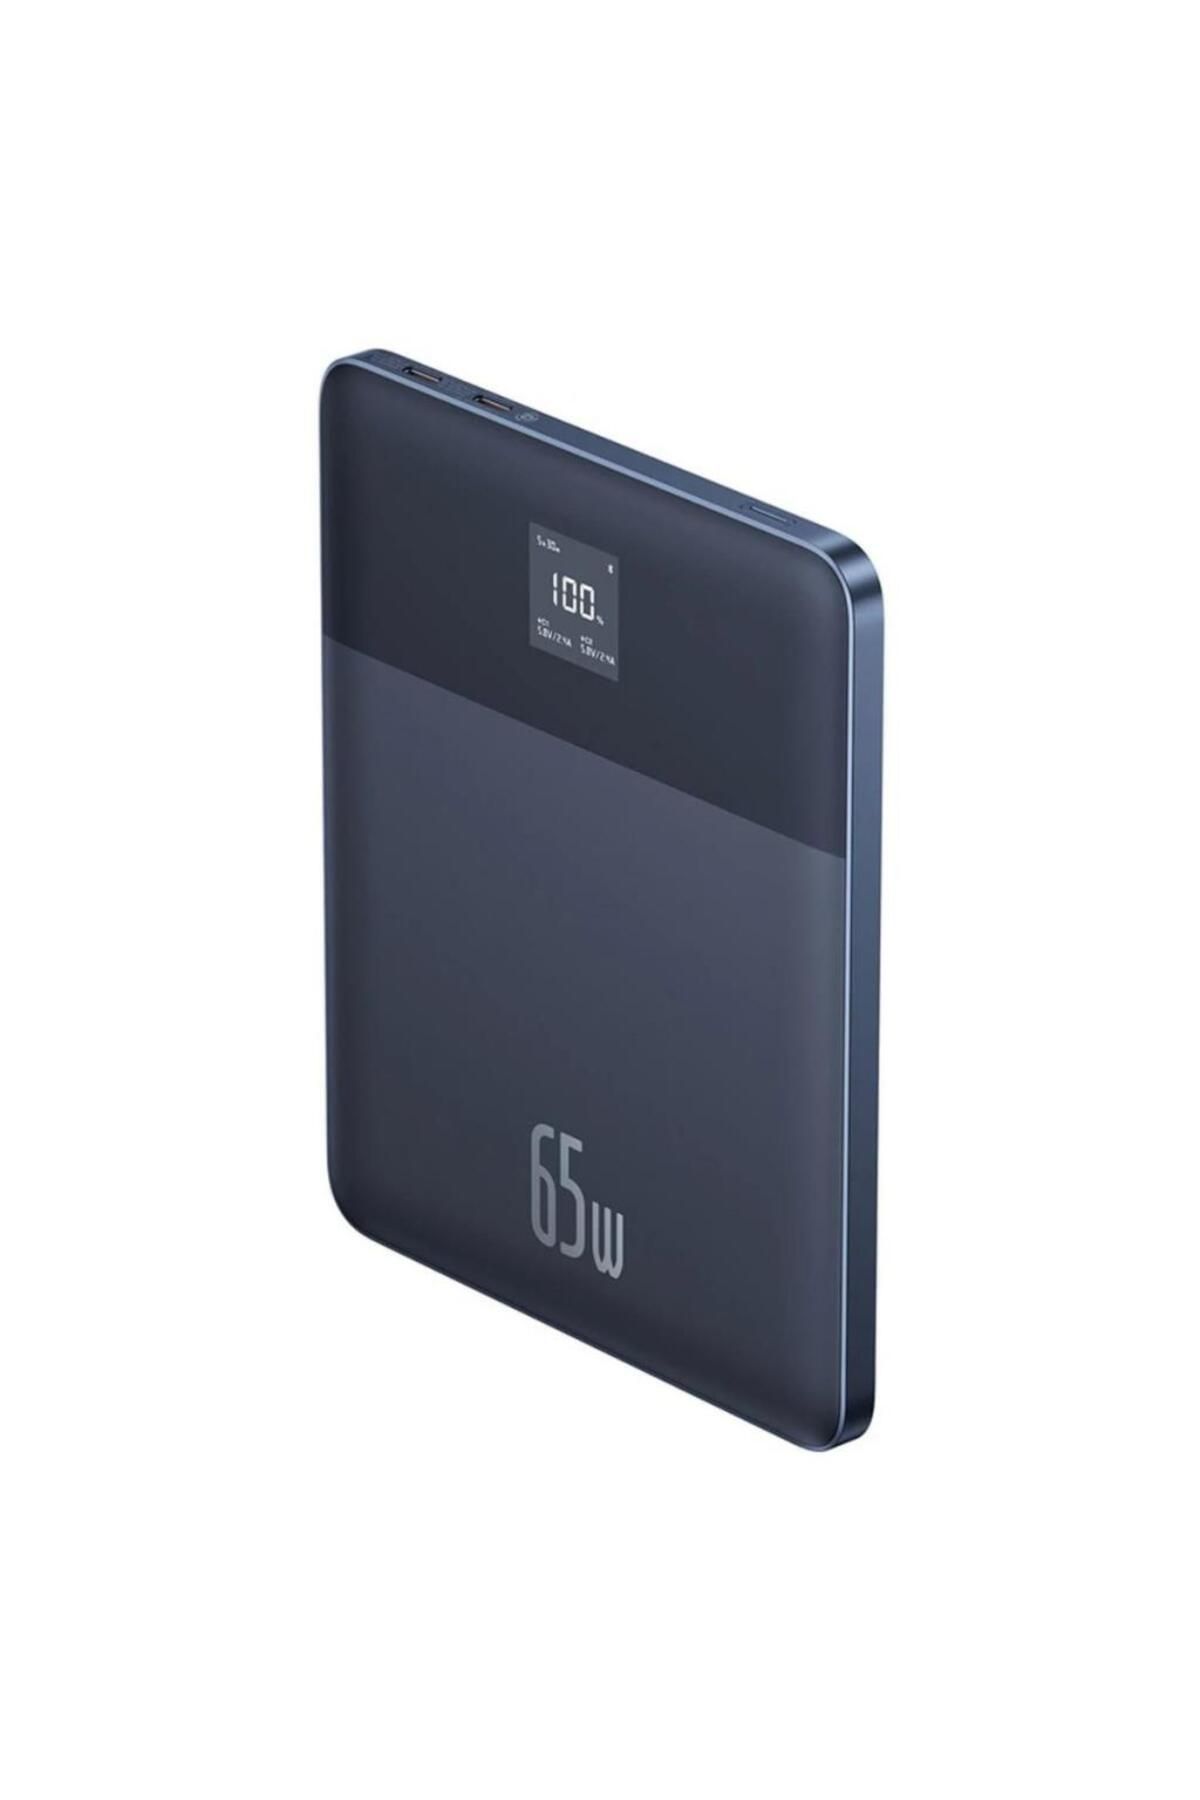 Baseus 7,3mm Ultra İnce Süper Şarj Akım Korumalı 65W 12000 mAh Powerbank Macbook İphone İpad Şarj